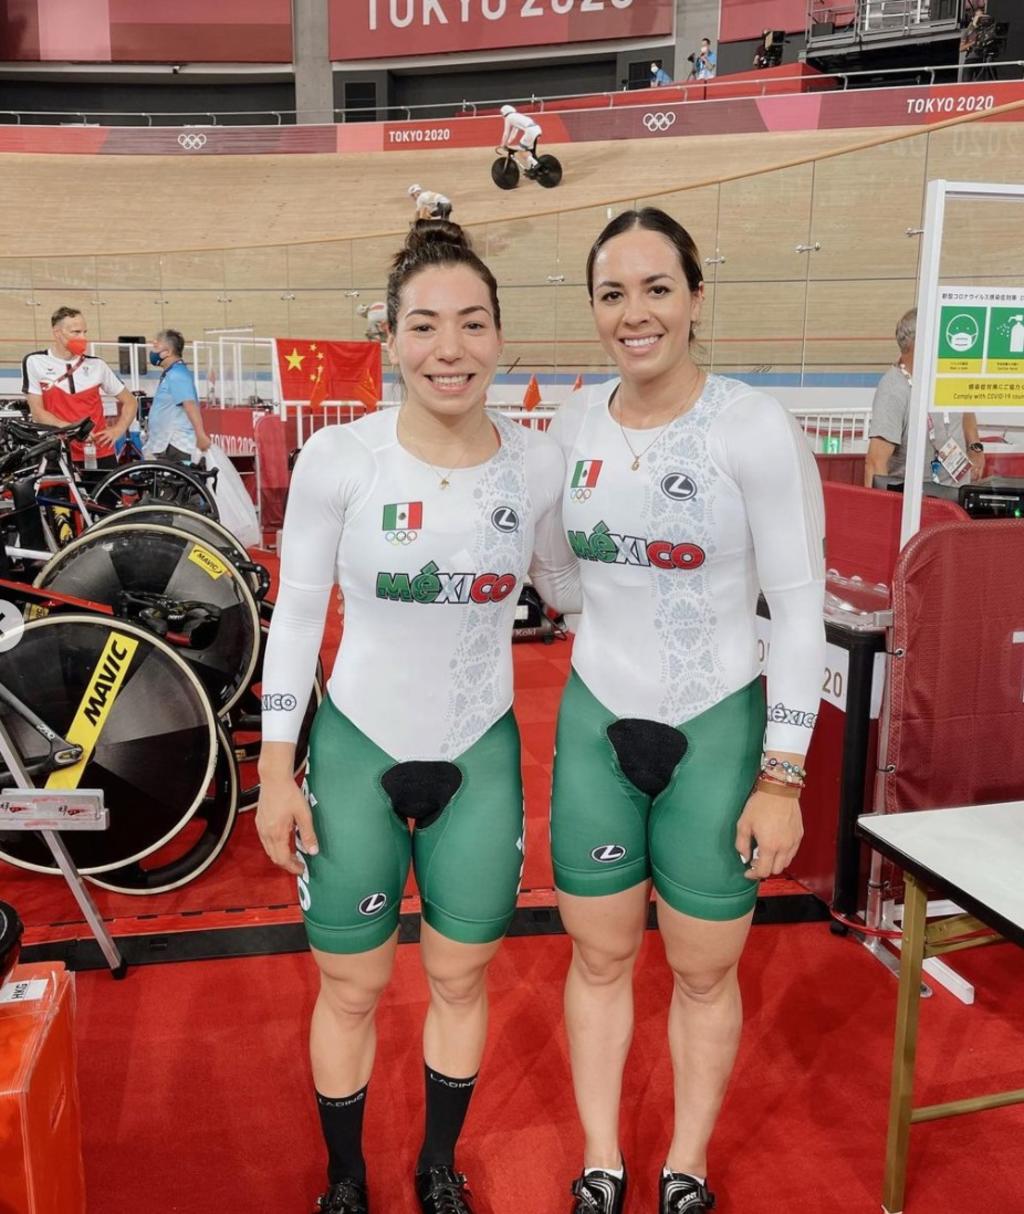 La pareja mexicana de Daniela Gaxiola y Yuli Verdugo terminó en el sexto lugar en la prueba de velocidad por equipos que se efectuó en el Velódromo de Izu, dentro de los Juegos Olímpicos de Tokio 2020. (ESPECIAL)